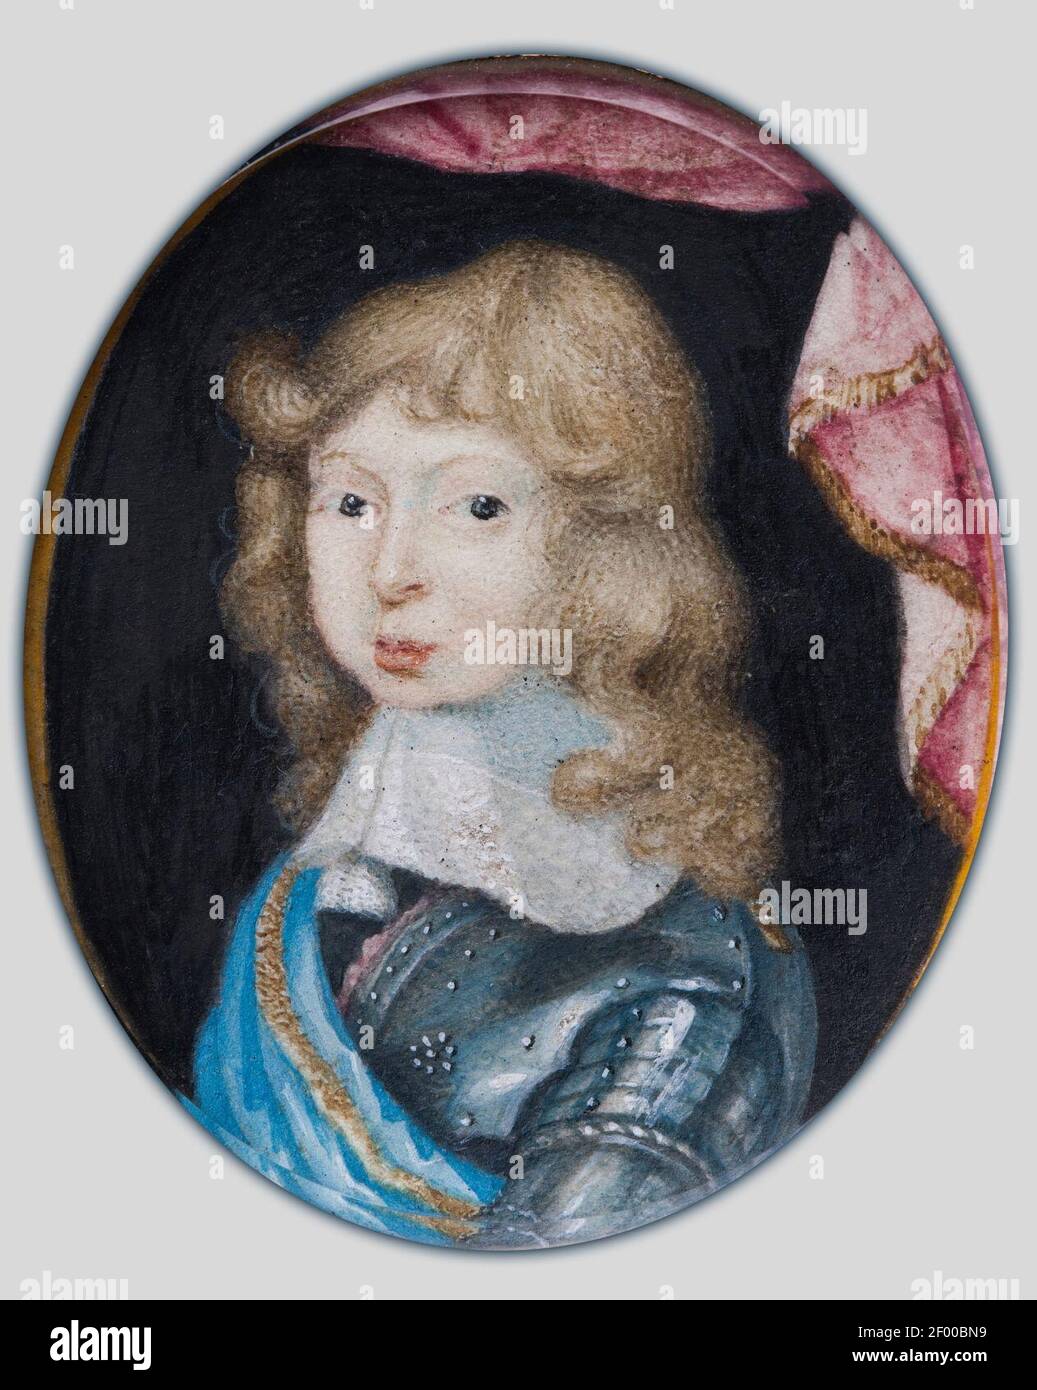 Pierre Signac - Miniatura retrato de Carlos XI, Rey de Suecia, como un niño 1660-1697 Foto de stock